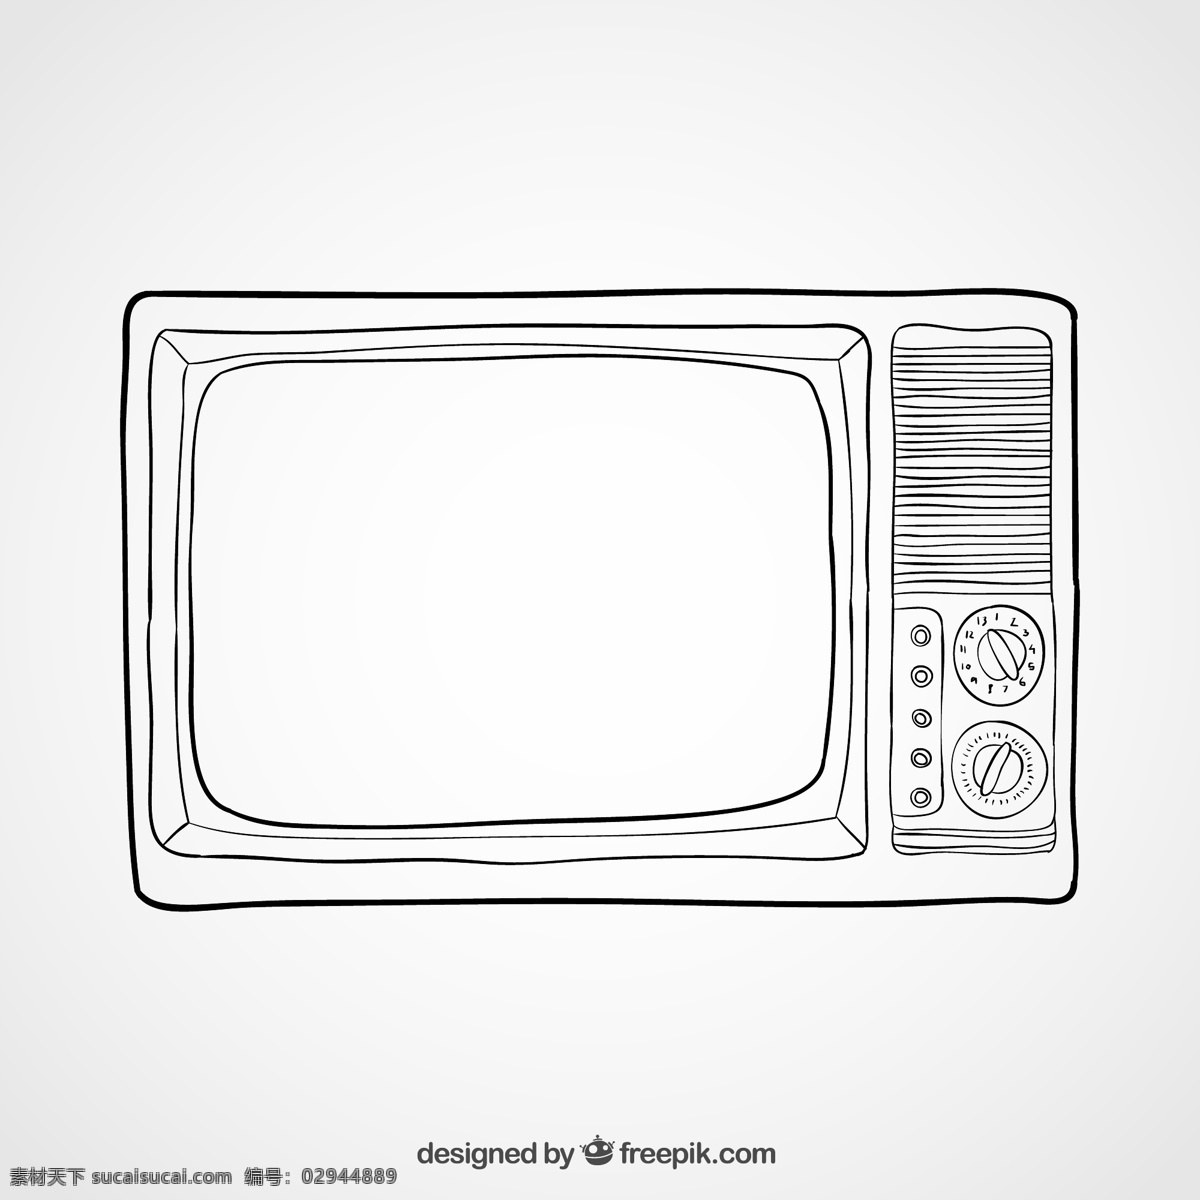 手绘 老式 电视机 矢量 家电 黑白电视机 矢量图 矢量素材